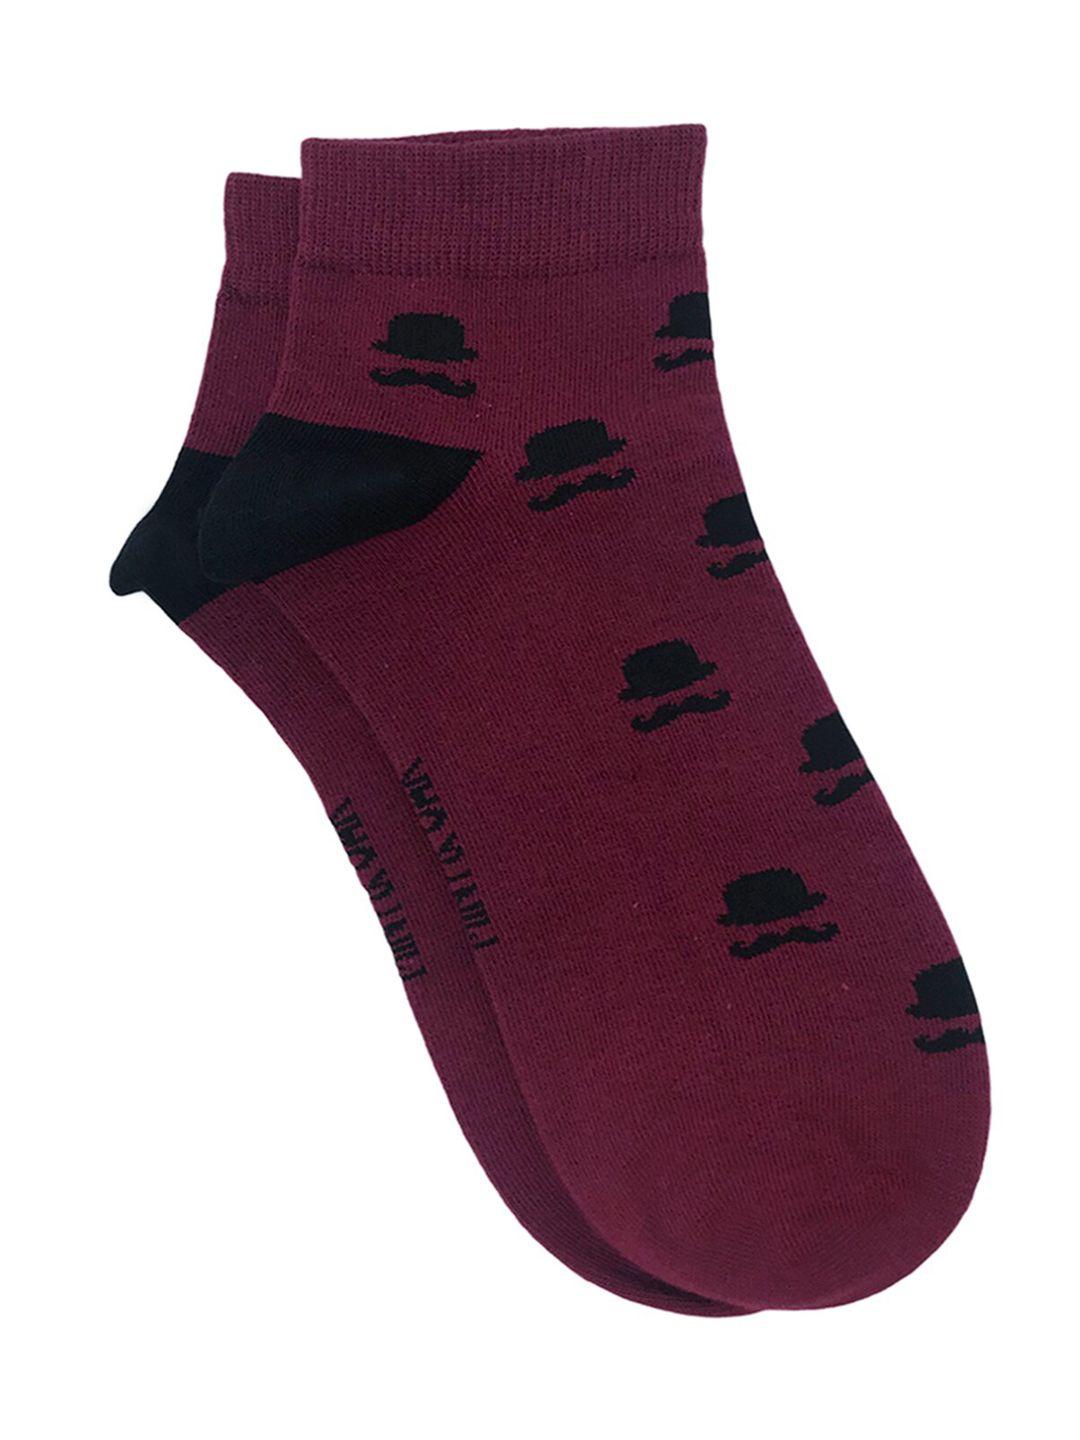 mint-&-oak-men-maroon-&-black-patterned-ankle-length-socks